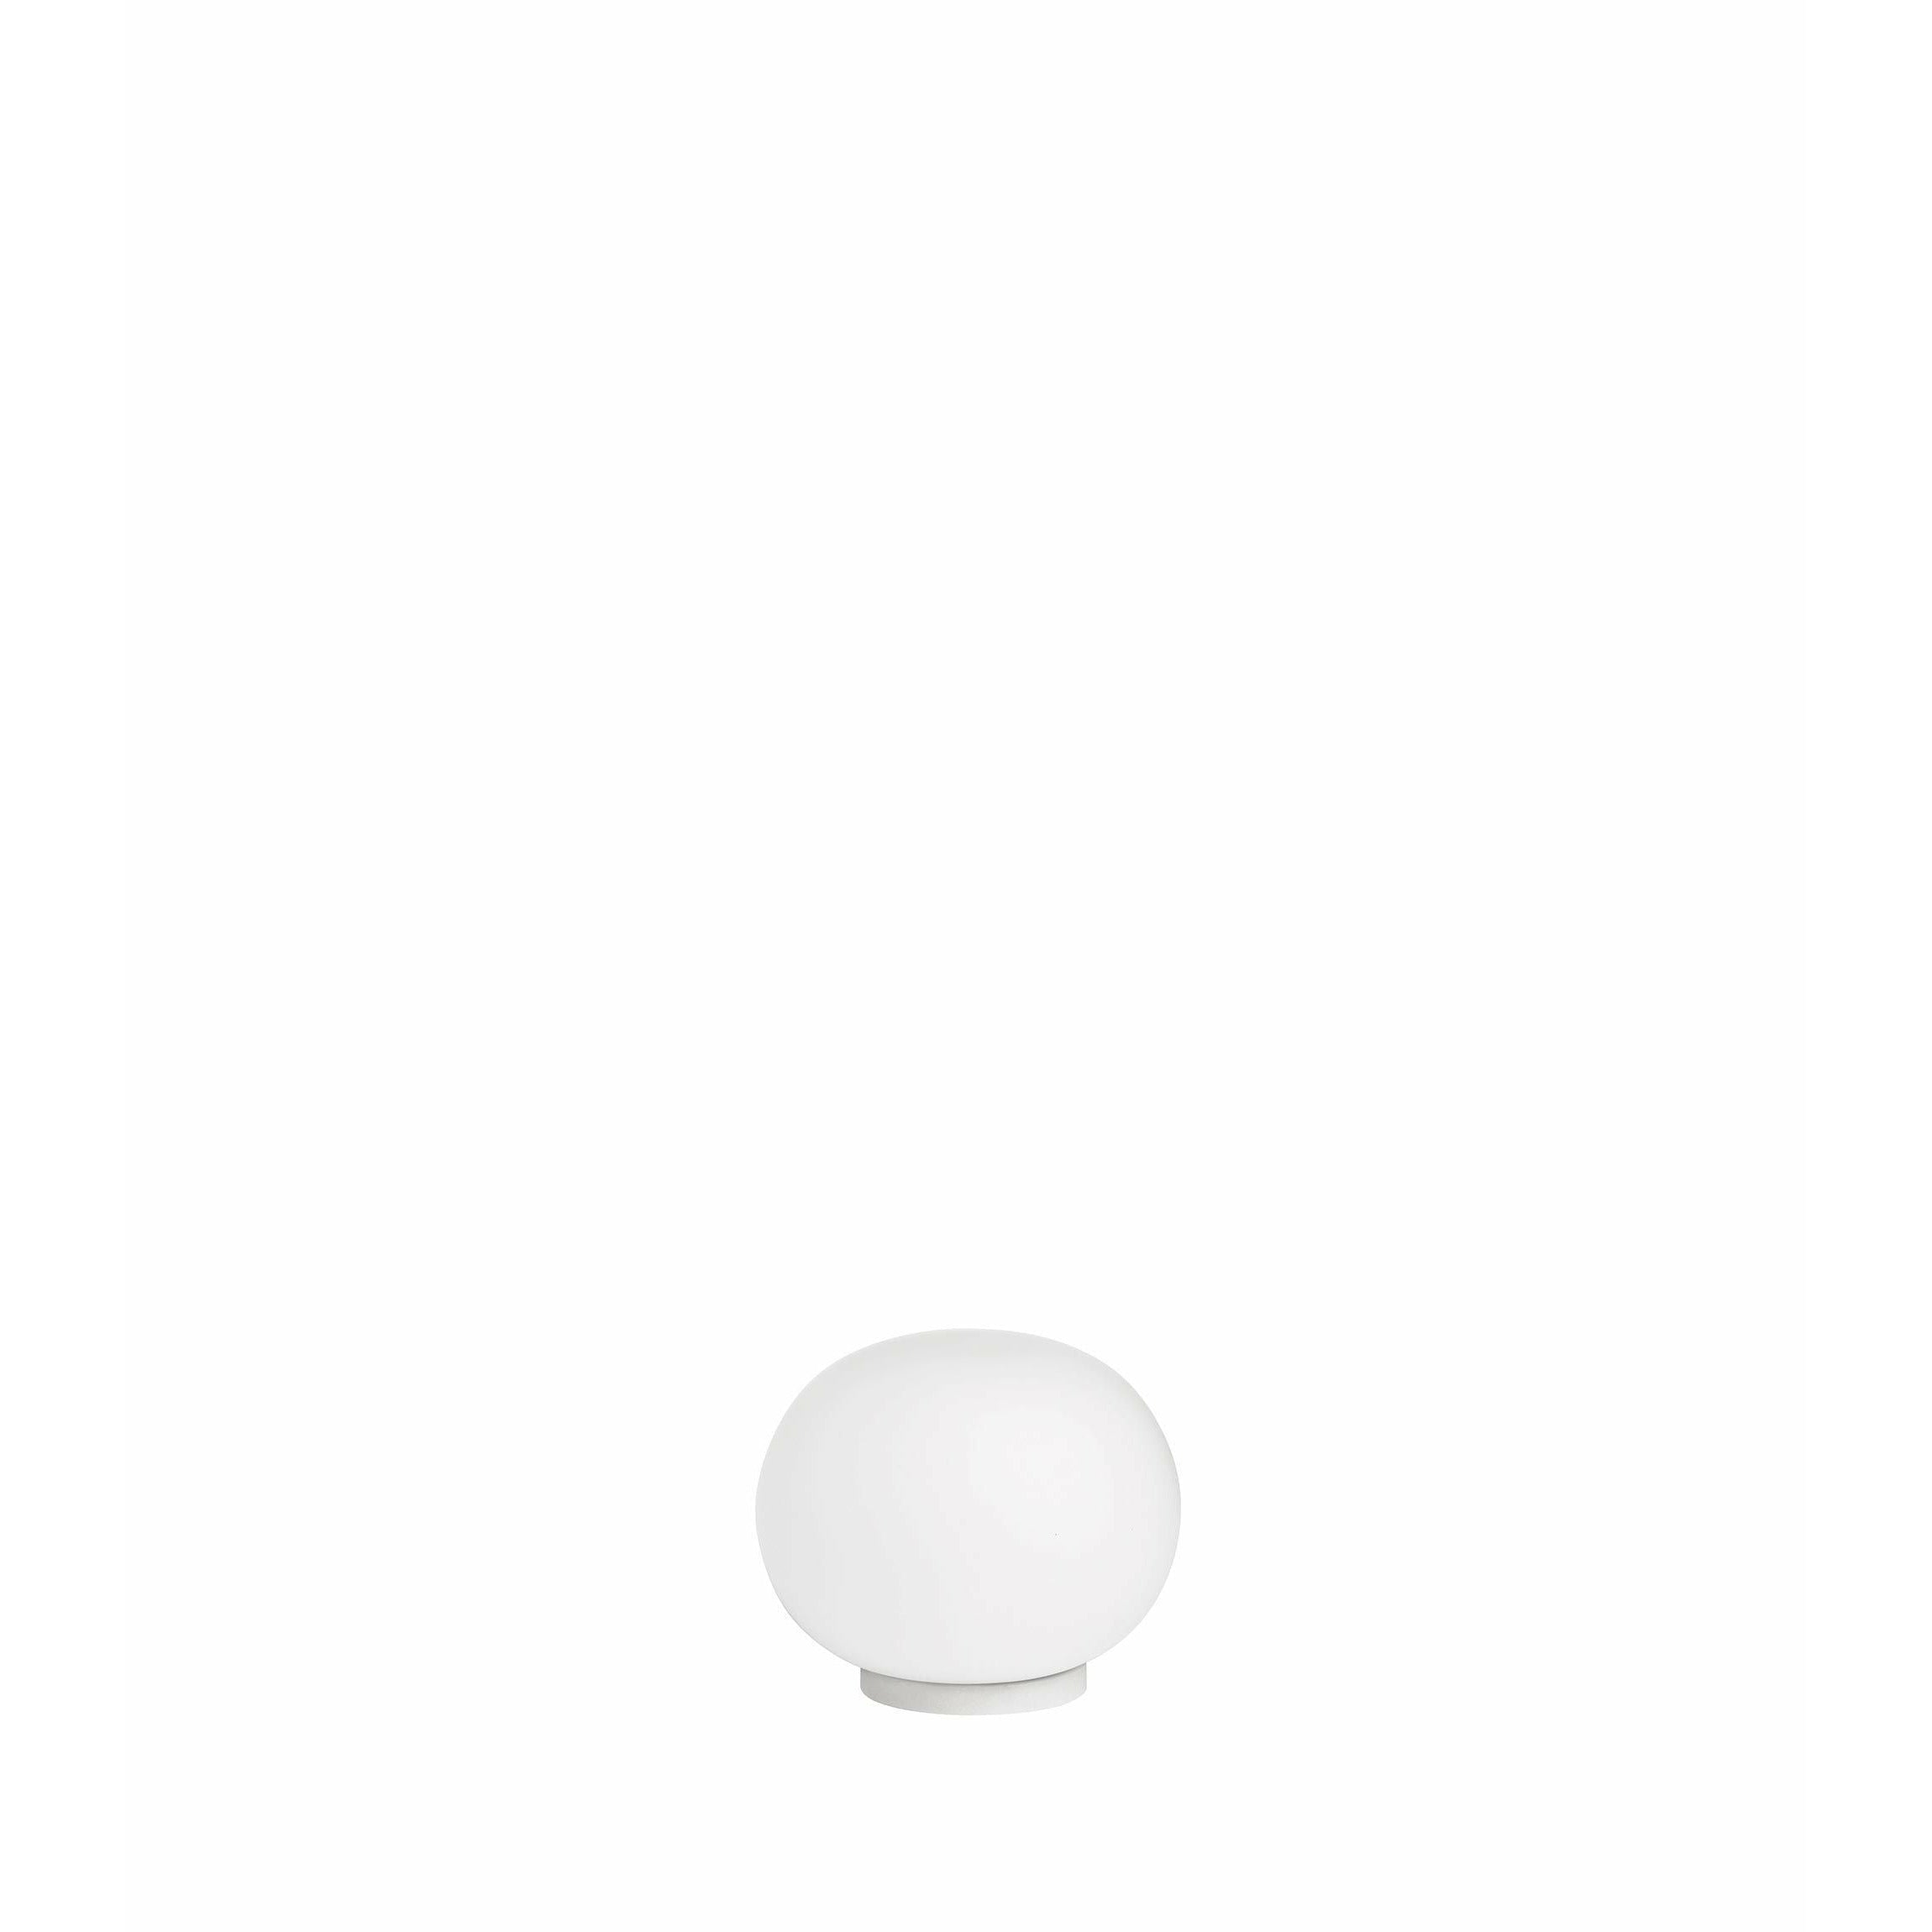 Flos mini glo a sfera lampada da tavolo con interruttore